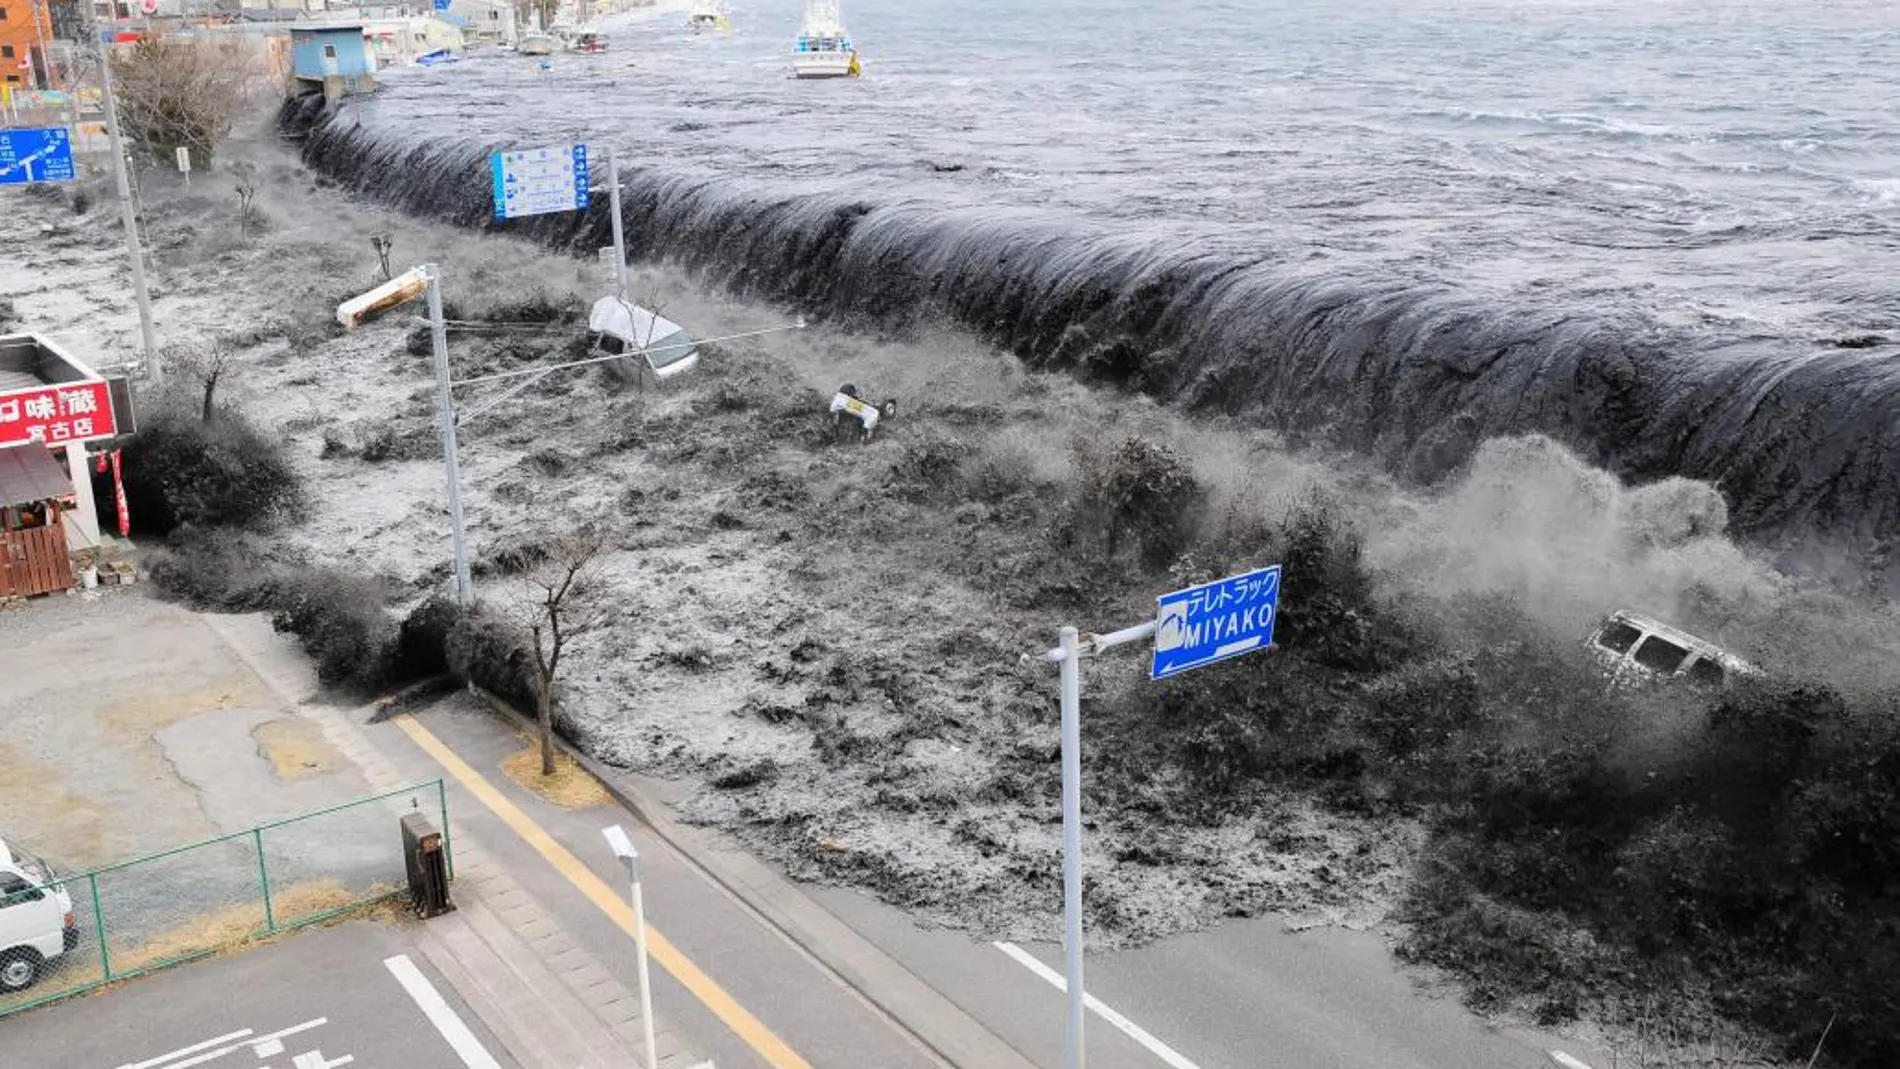 El tsunami de 2011, el último episodio de estas características sufrido por la Tierra